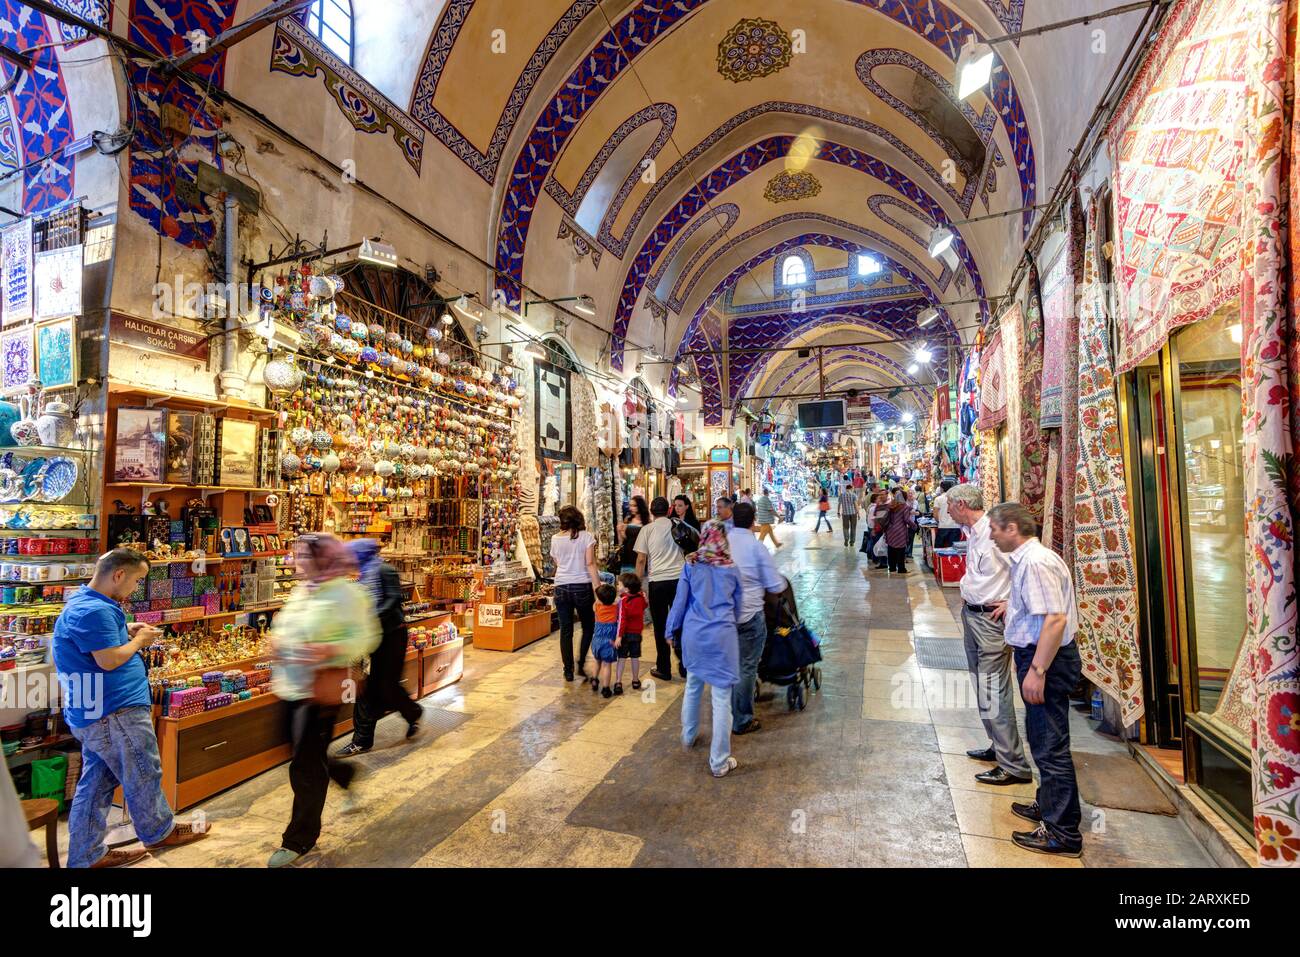 Istanbul - 27. MAI 2013: Inside the Grand Bazaar am 27. Mai 2013 in Istanbul, Türkei. Der große Basar ist der älteste und größte überdachte Markt in Stockfoto